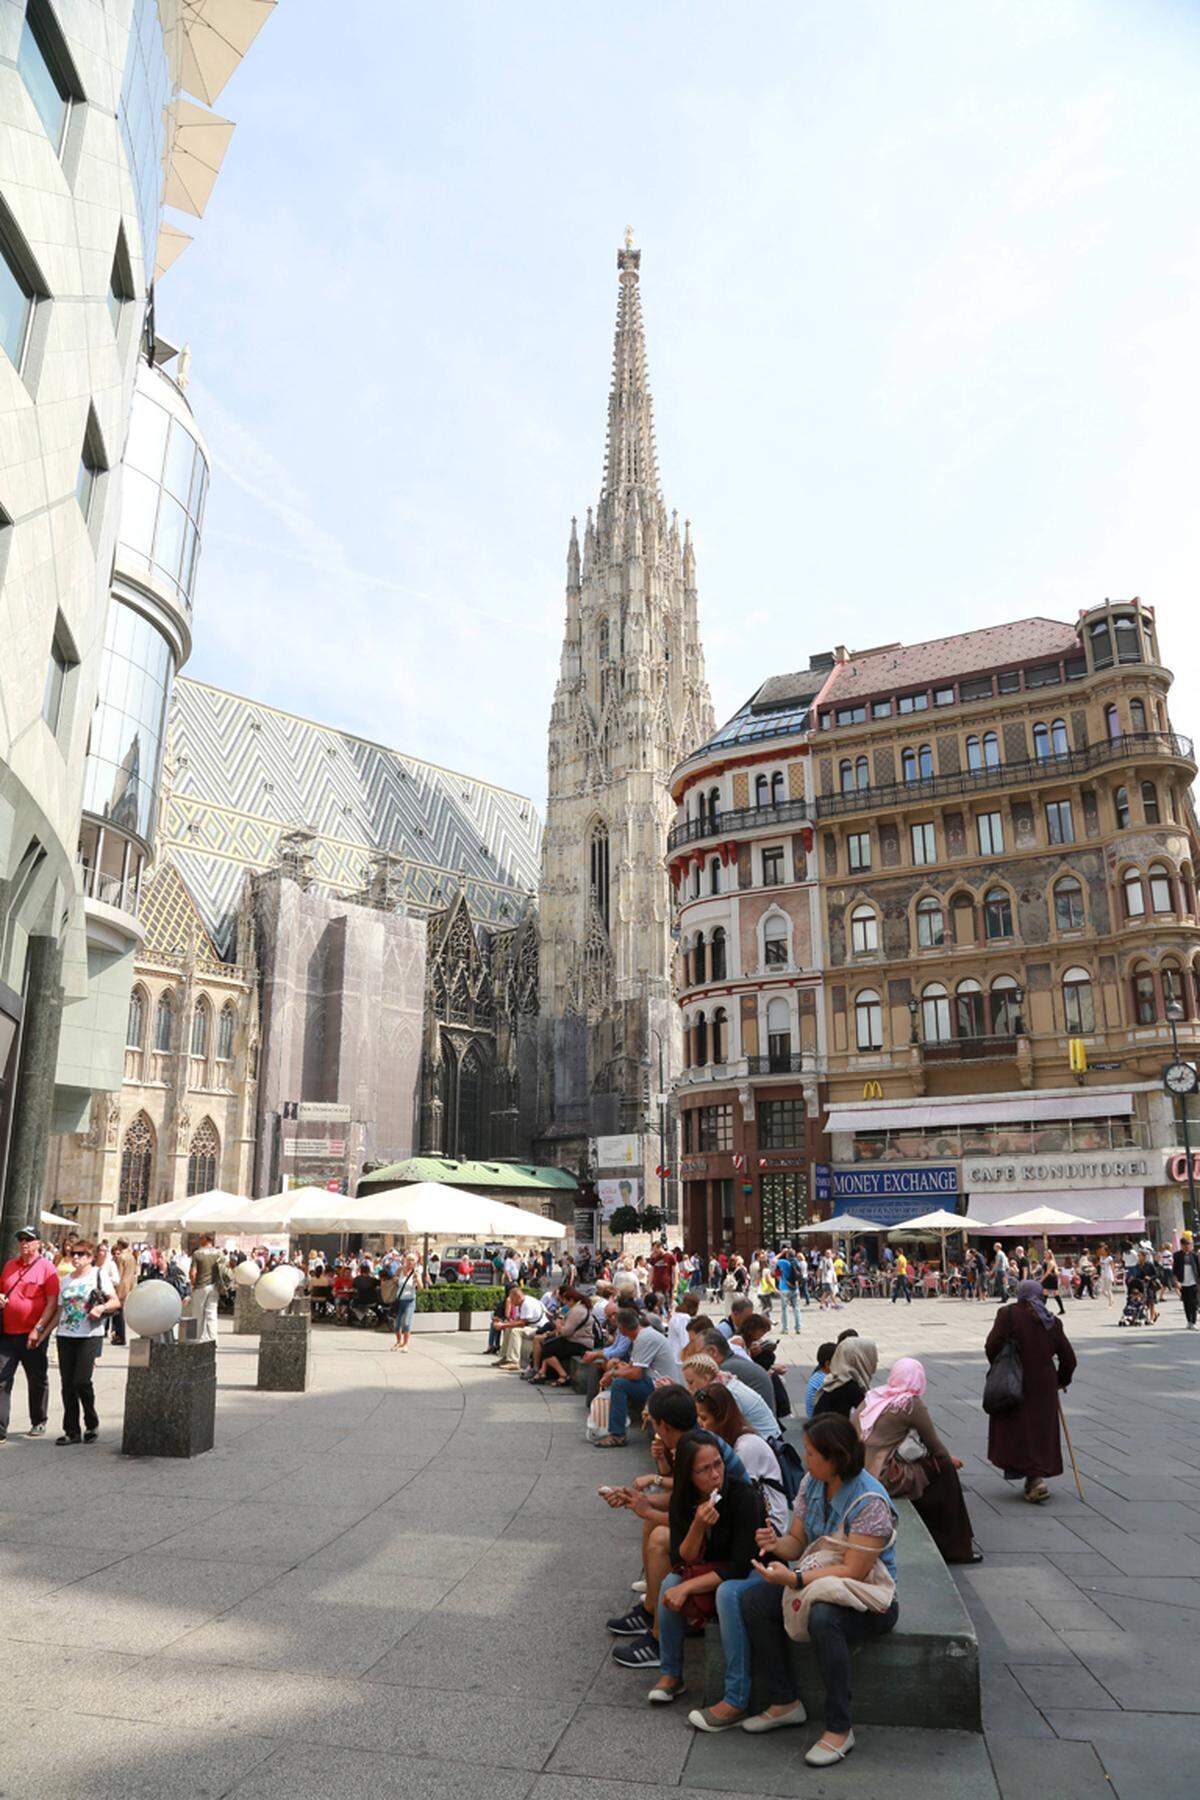 Das Unternehmen Visual Media hat einen Shoppingguide für Touristen mit den 30 besten Shopping-Städten erstellt. Wien landet dabei auf Platz 21, noch vor Städten wie Prag, Kopenhagen oder Helsinki.